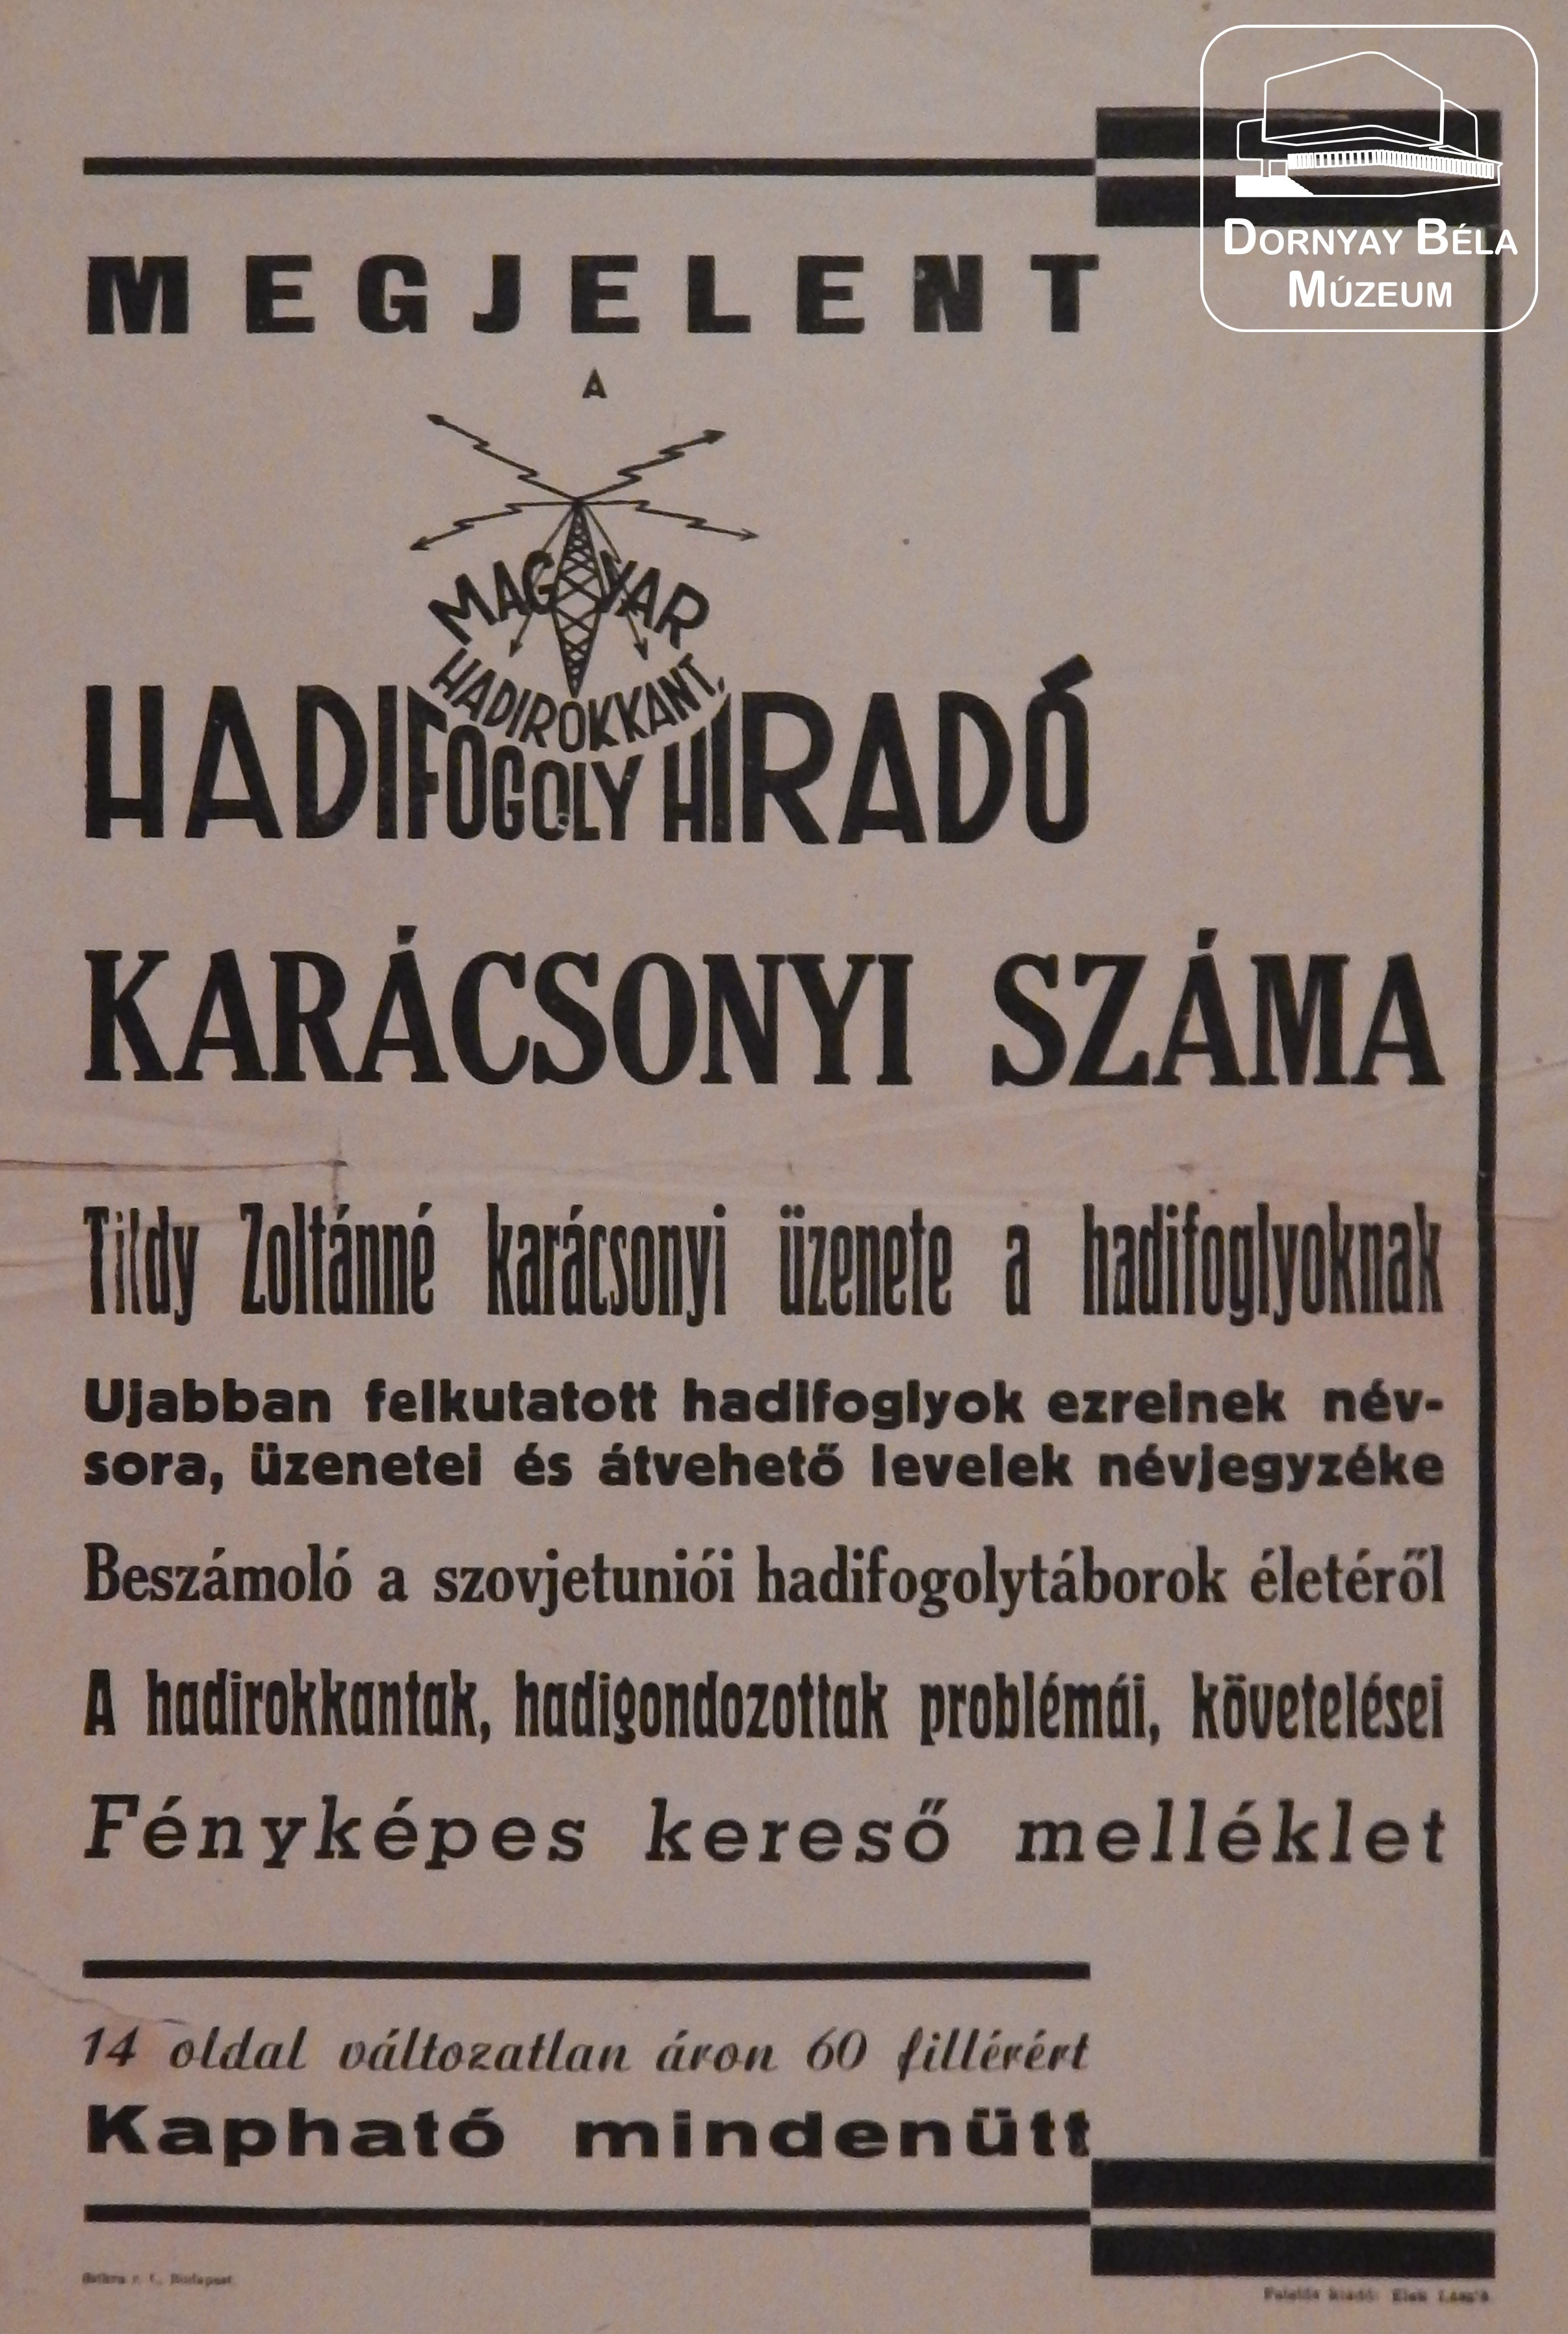 Hadifogoly Híradó (Dornyay Béla Múzeum, Salgótarján CC BY-NC-SA)